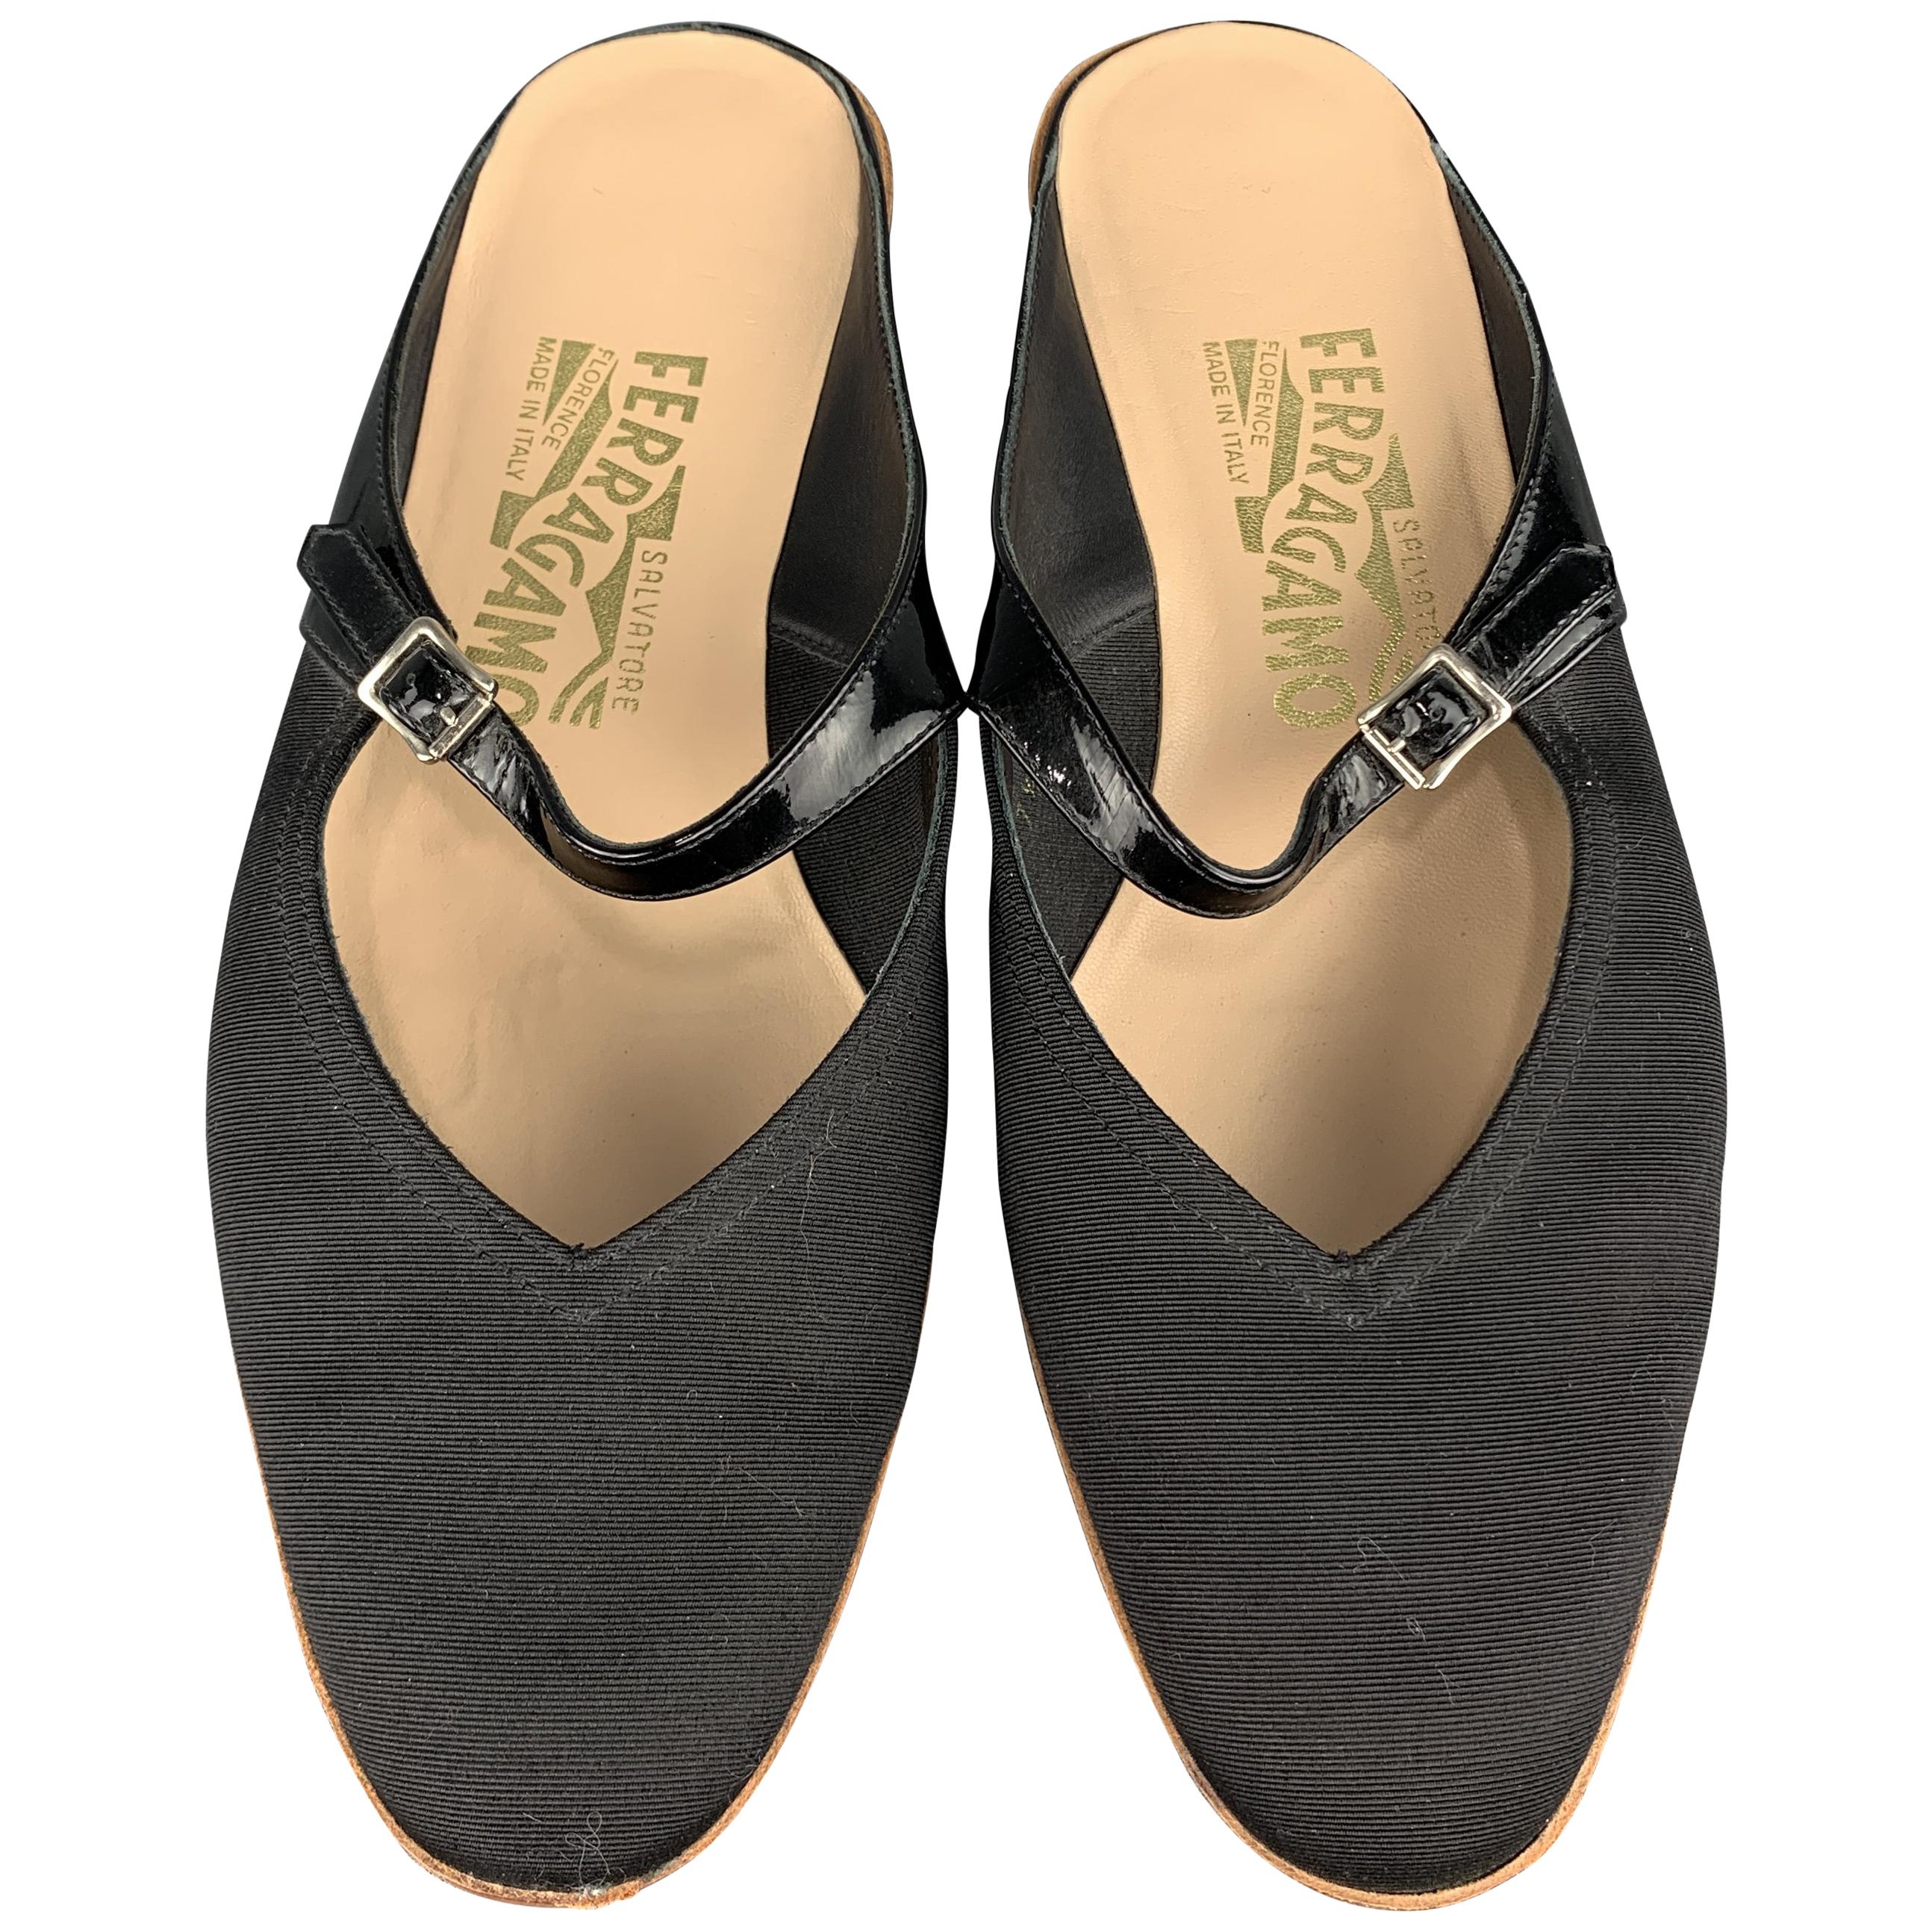 SALVATORE FERRAGAMO Size 7.5 Black Silk Faille & Patent Leather Flats